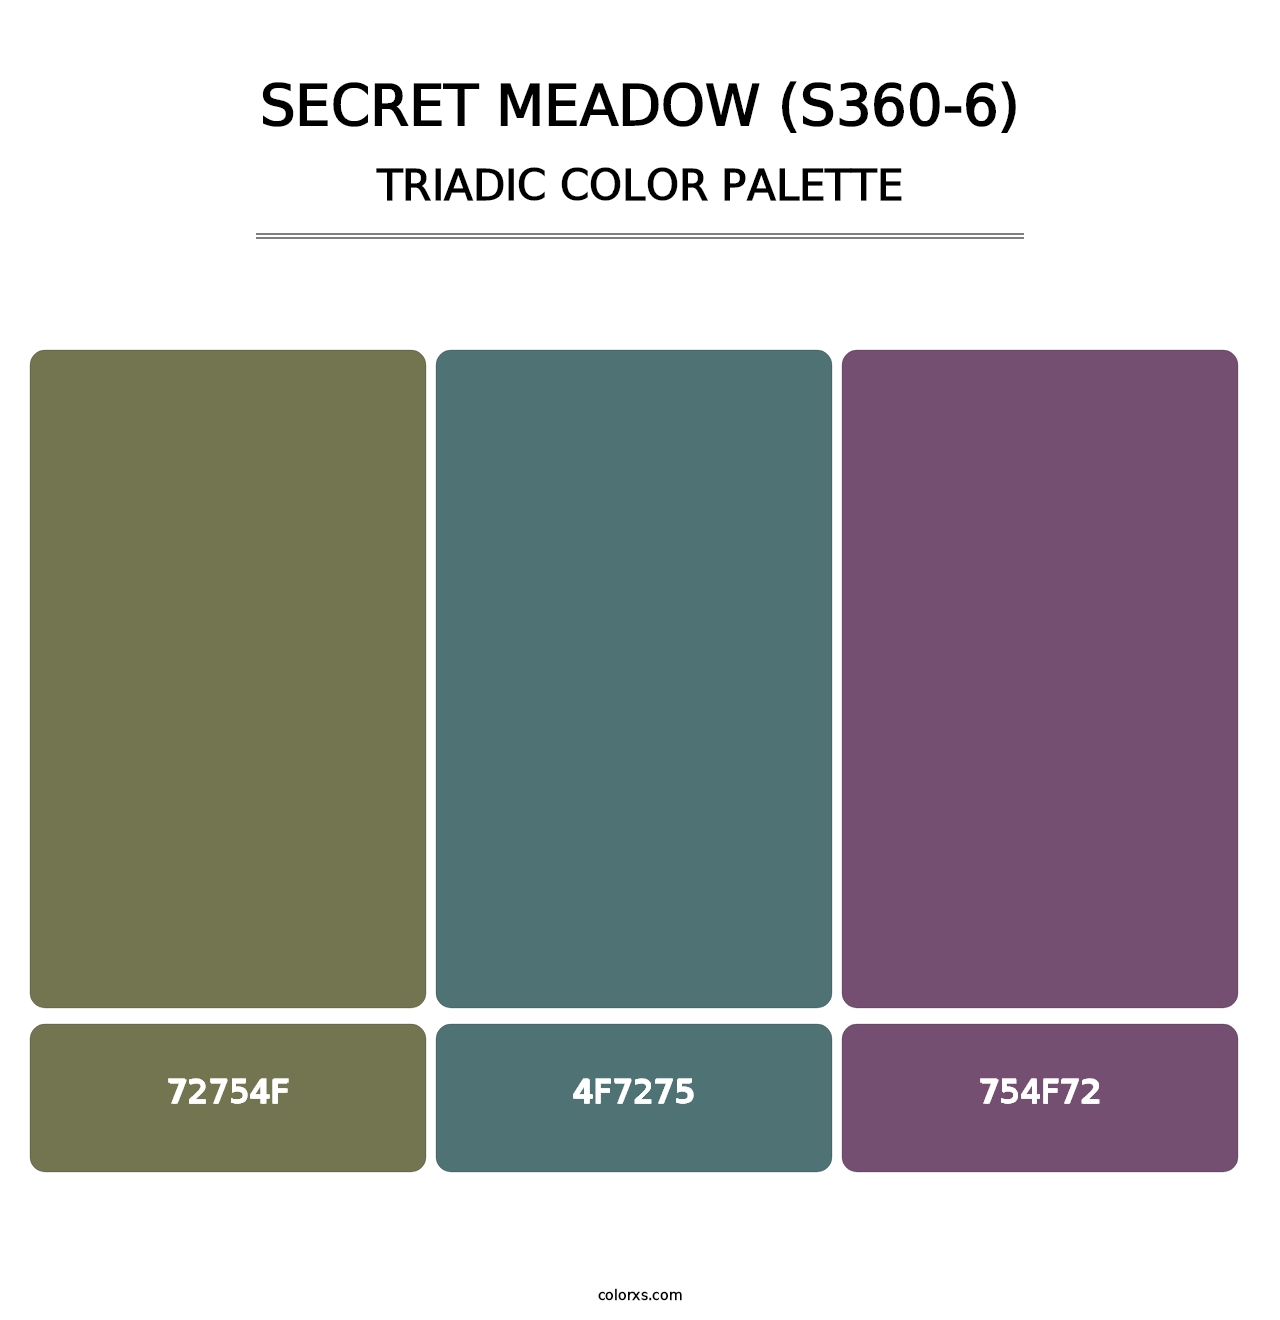 Secret Meadow (S360-6) - Triadic Color Palette